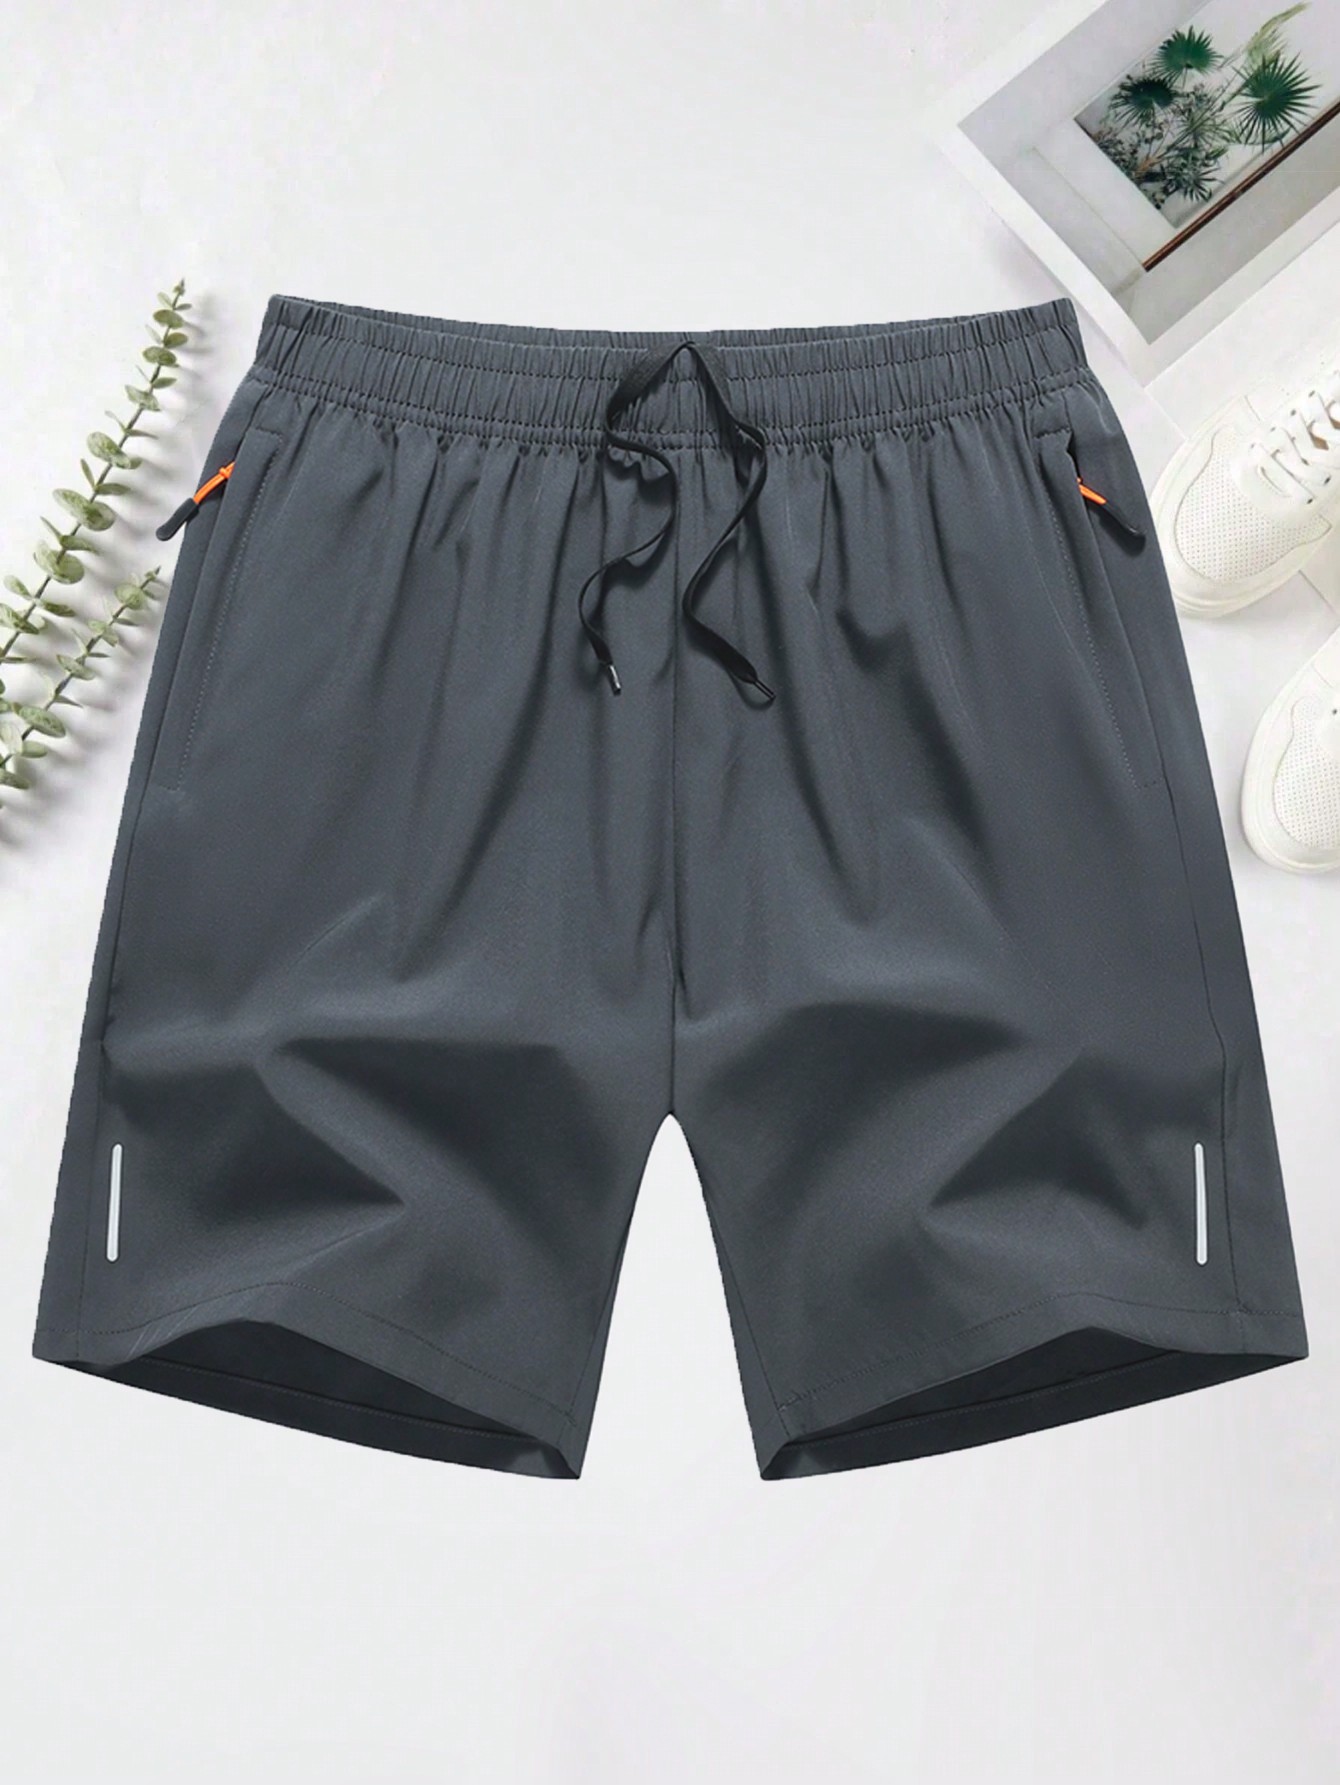 Мужские повседневные спортивные шорты с эластичной резинкой на талии, светло-серый цена и фото